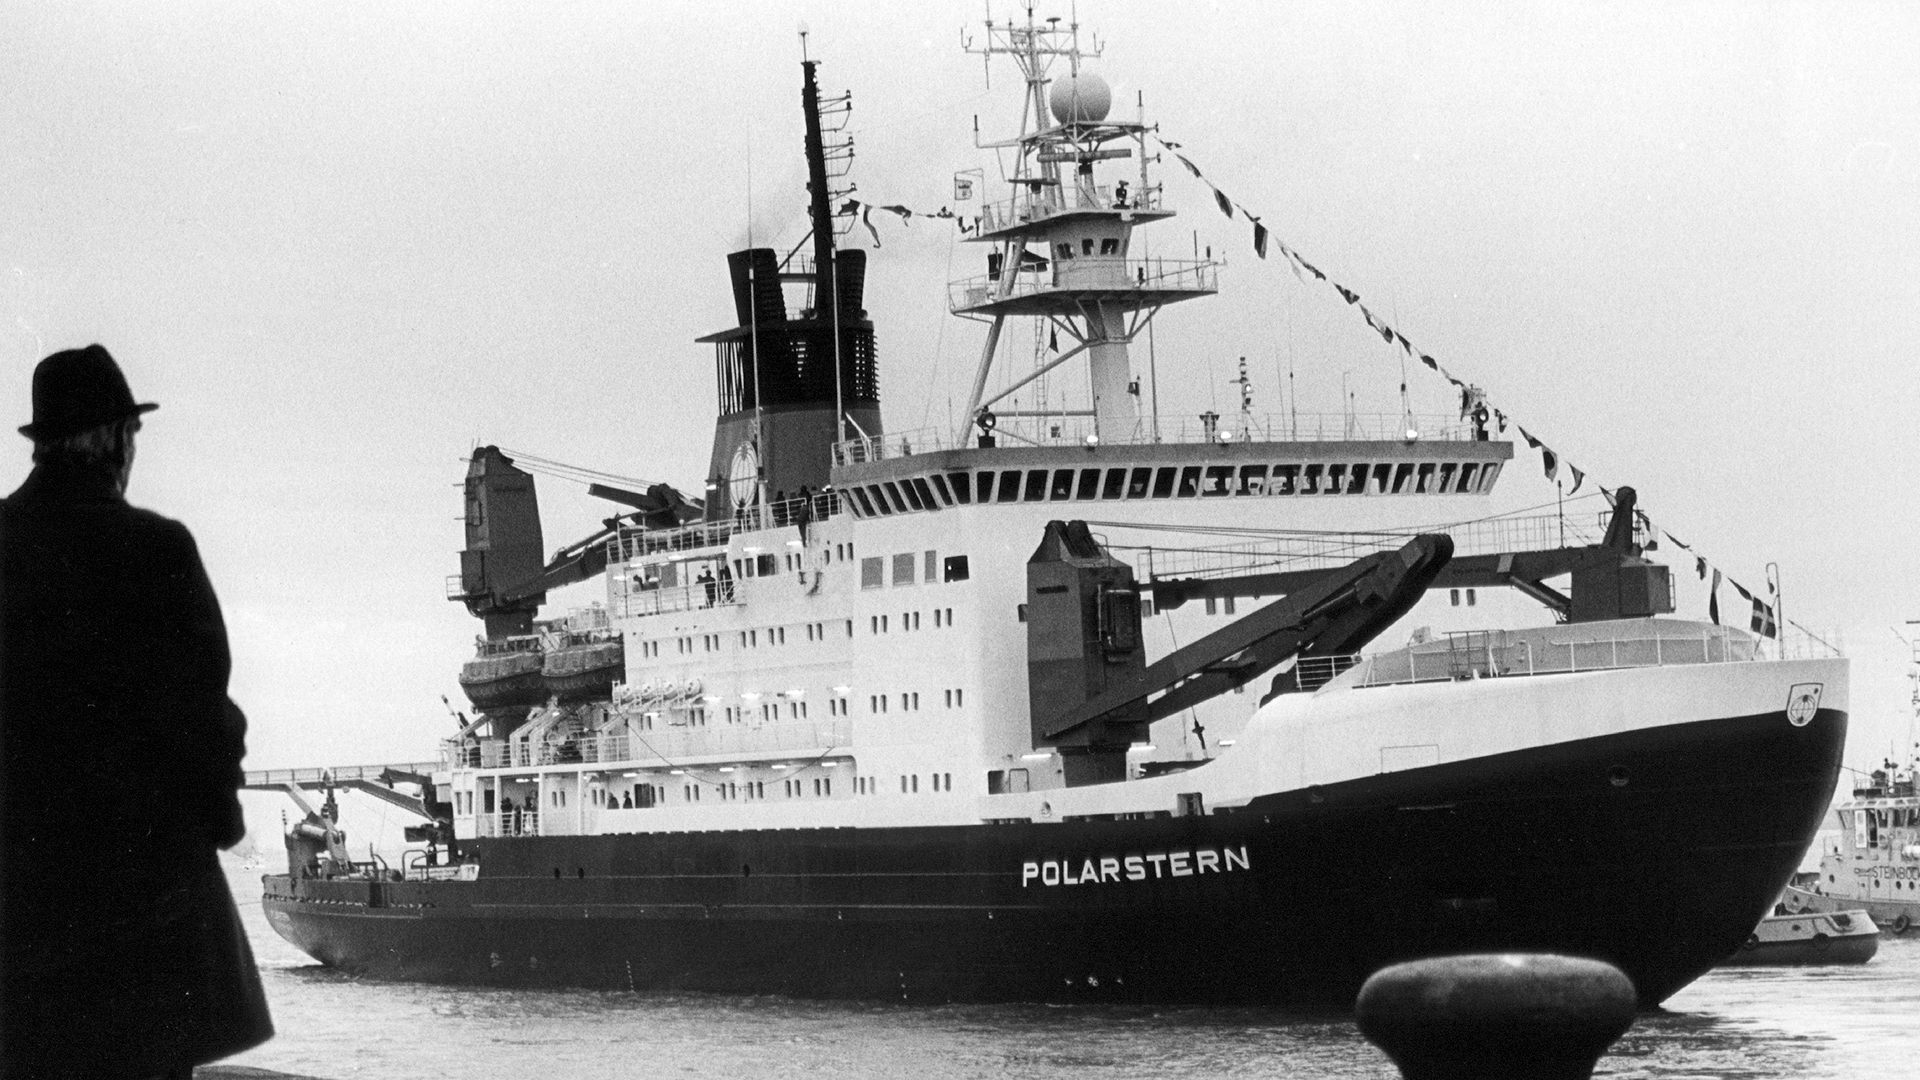 Das Polarforschungsschiff "Polarstern" wird am 9. Dezember 1982 in Bremerhaven in Dienst gestellt. | picture-alliance / dpa